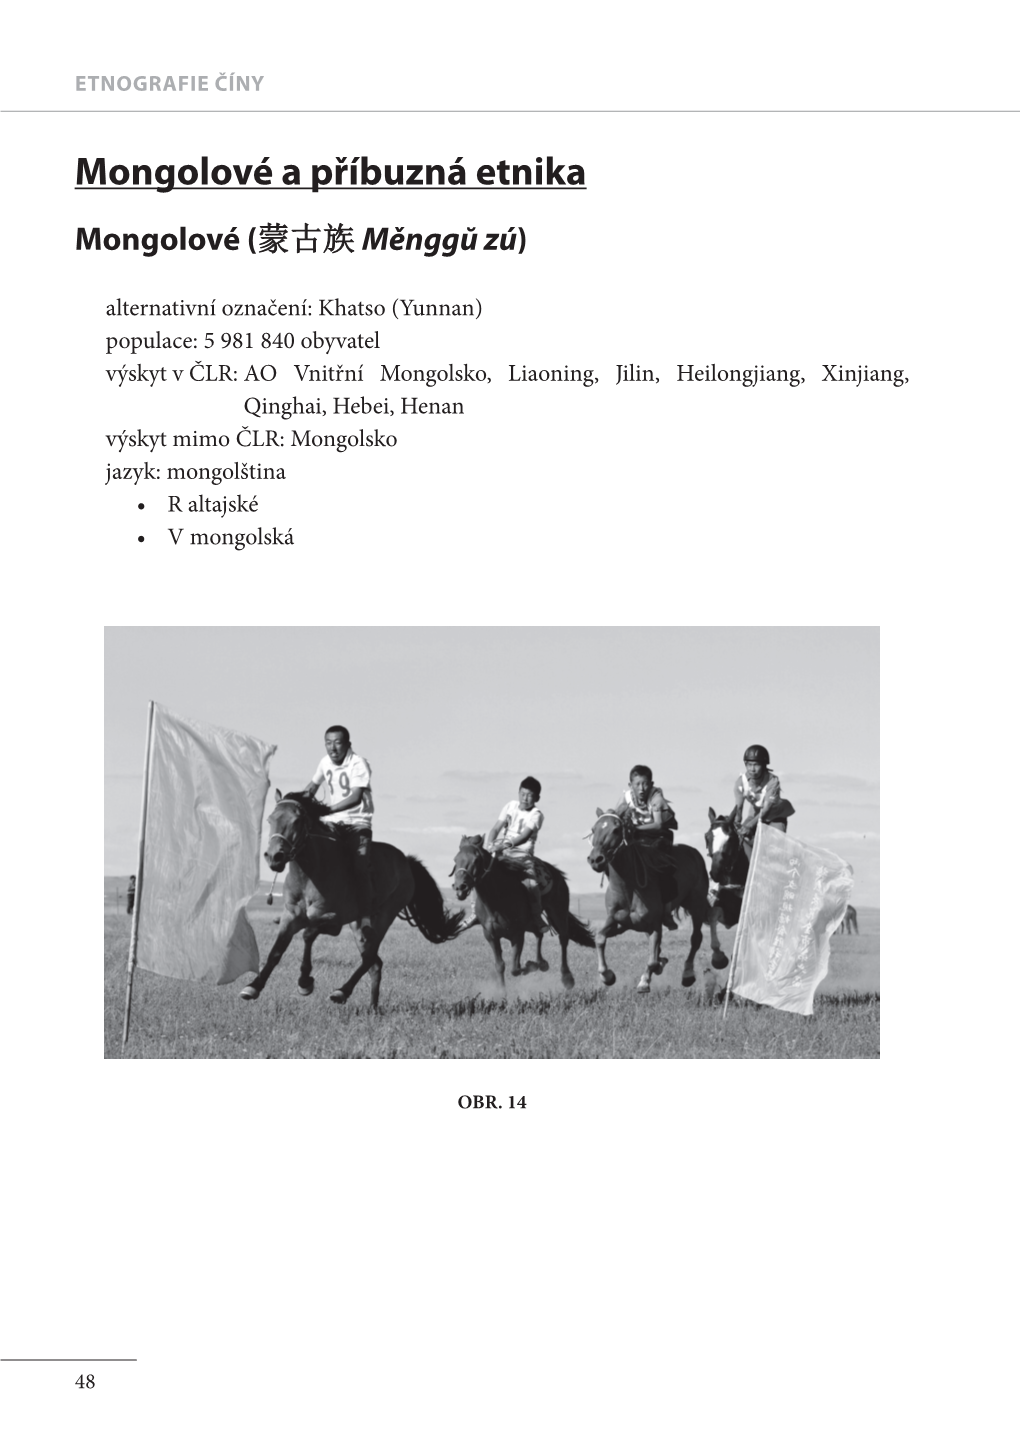 Mongolové a Příbuzná Etnika Mongolové (蒙古族 Měnggŭ Zú)